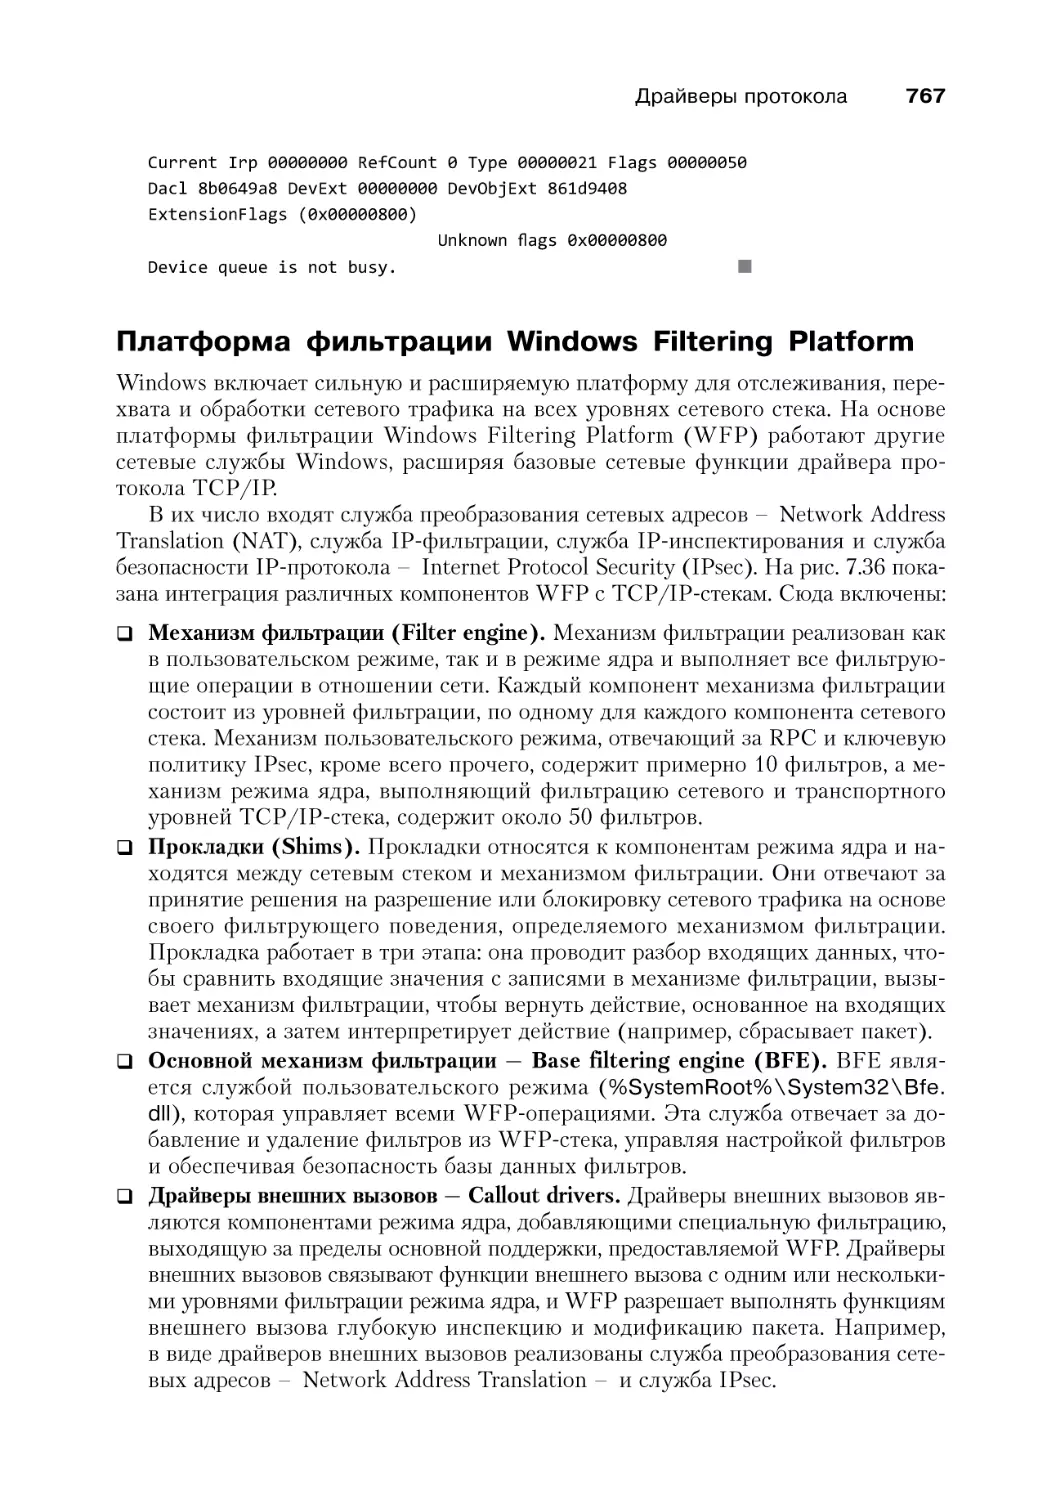 Платформа фильтрации Windows Filtering Platform